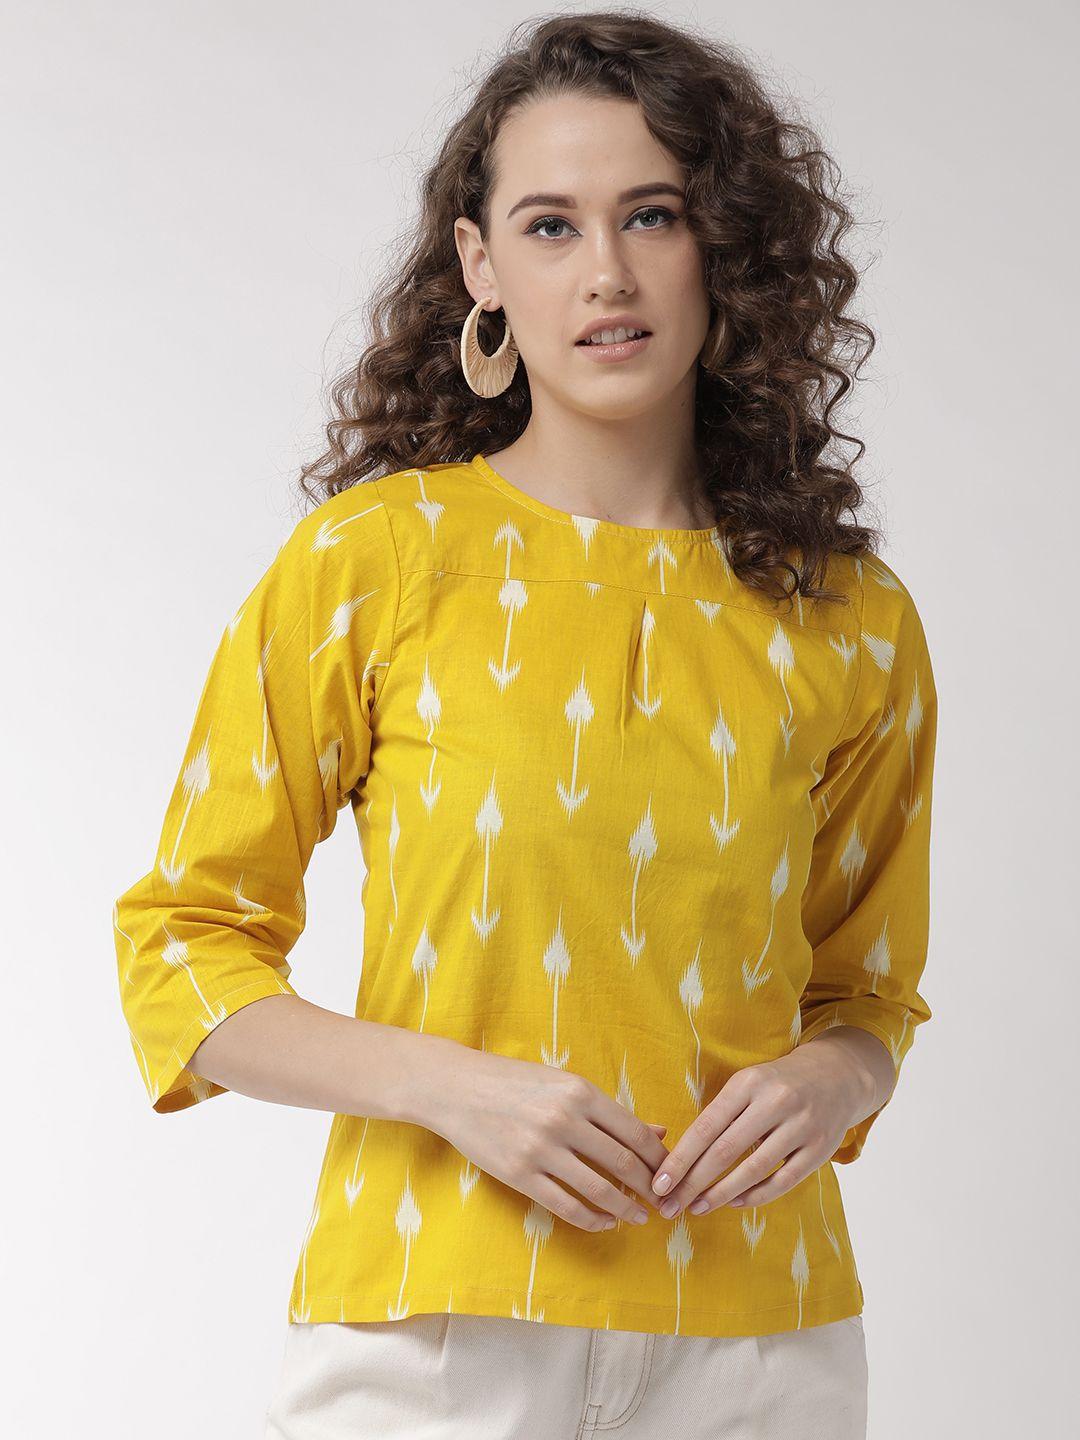 inweave women yellow & white printed top